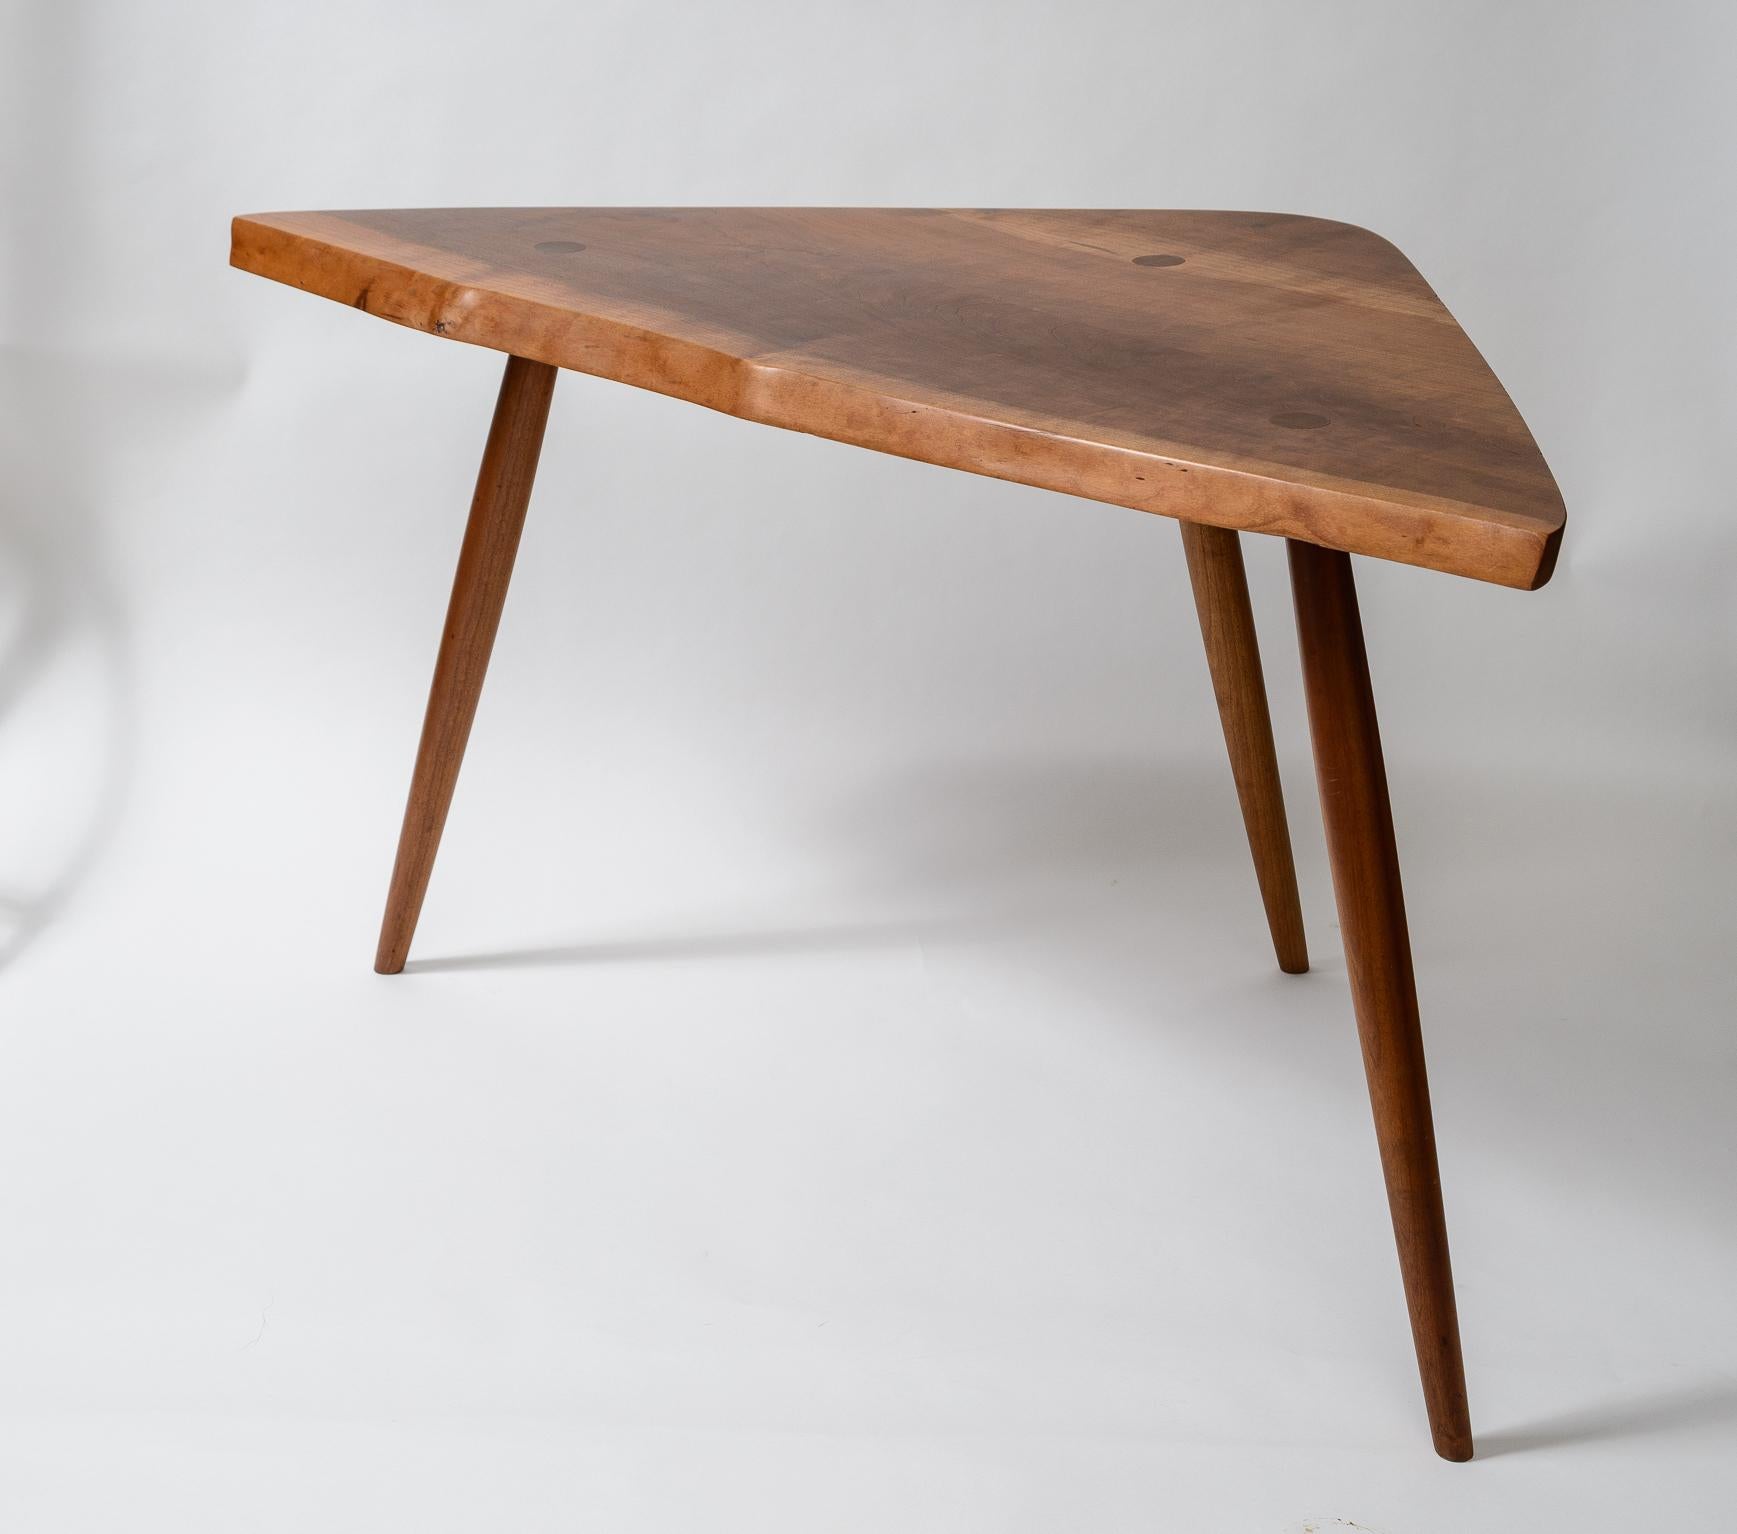 George Nakashima Kirschbaum Wepman Tisch
Große Form mit oben durchgesteckten Beinen
Ausdrucksstarke freie Kante